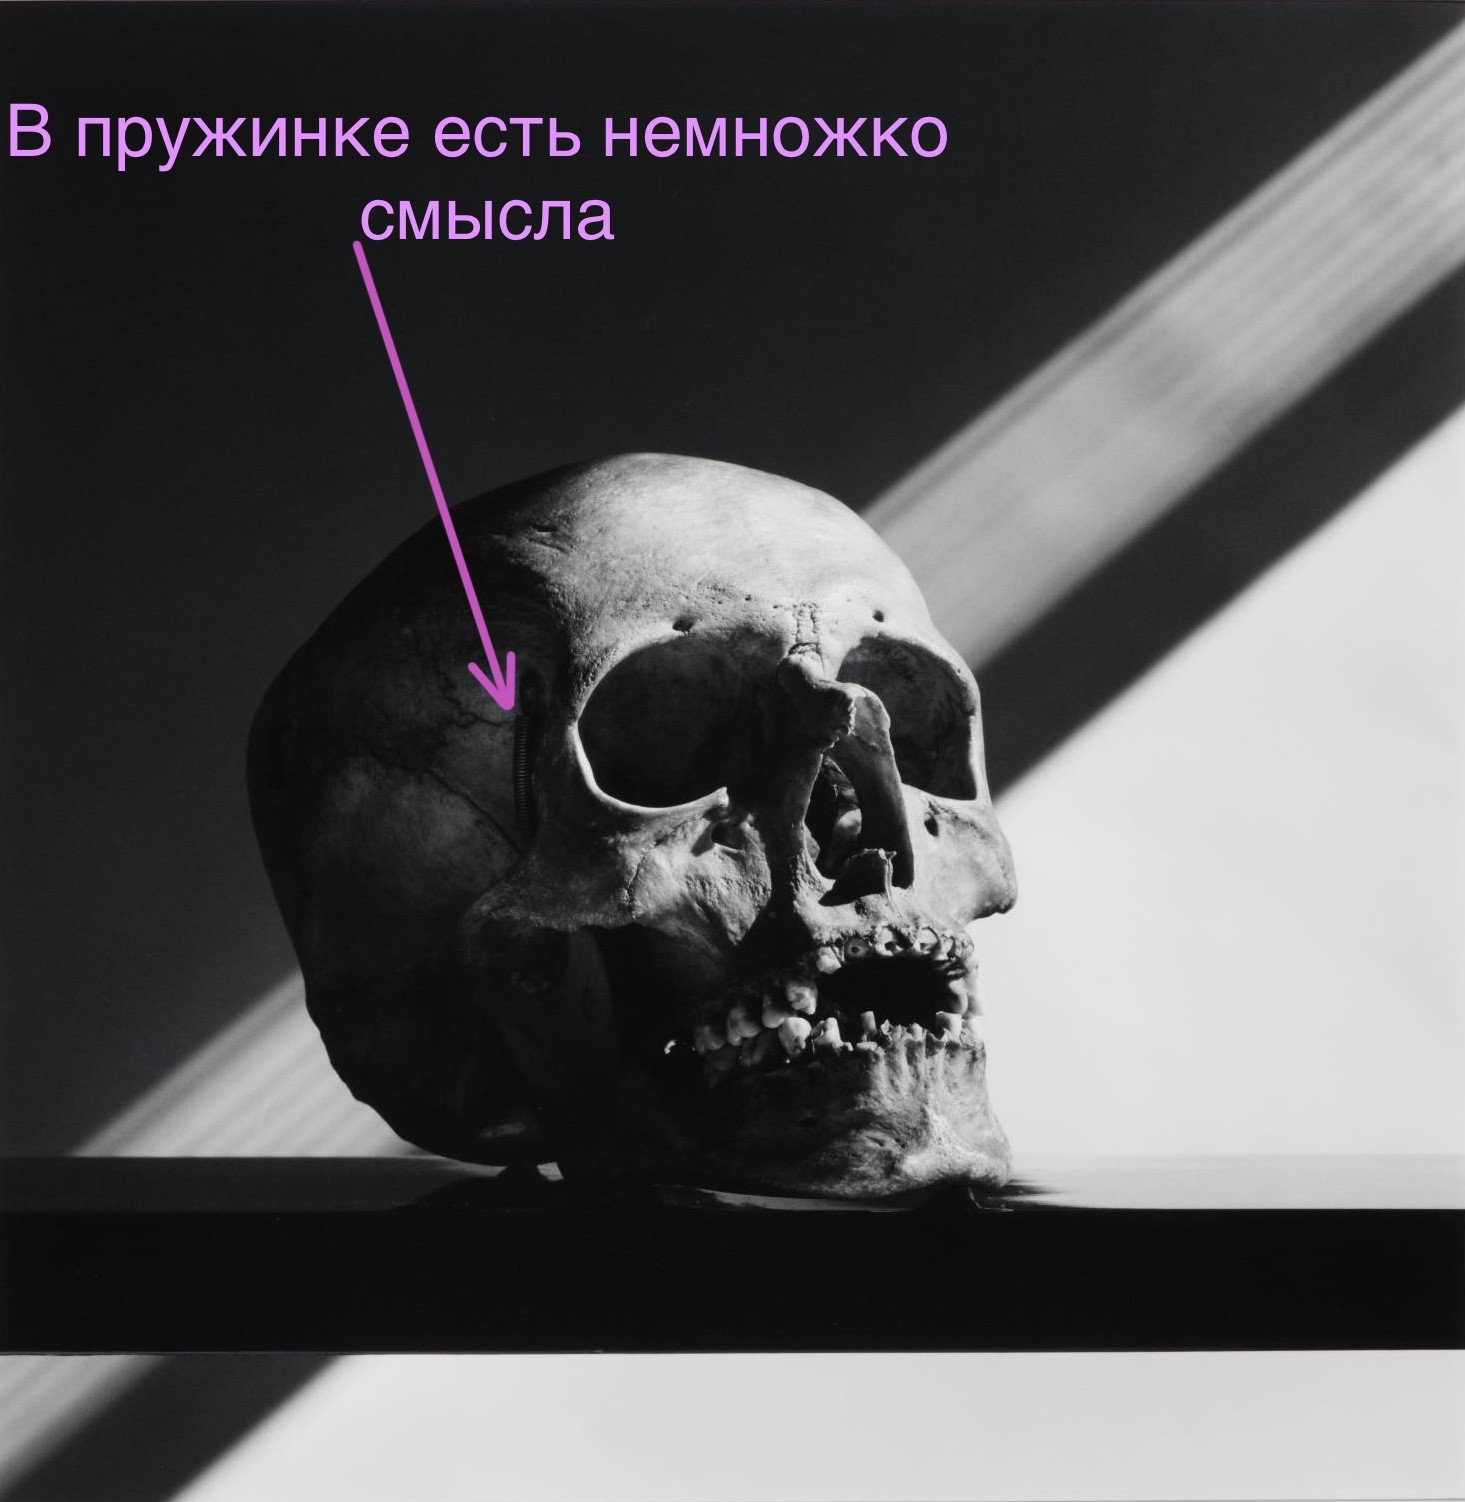 “Skull”, Robert Mapplethorpe, 1988